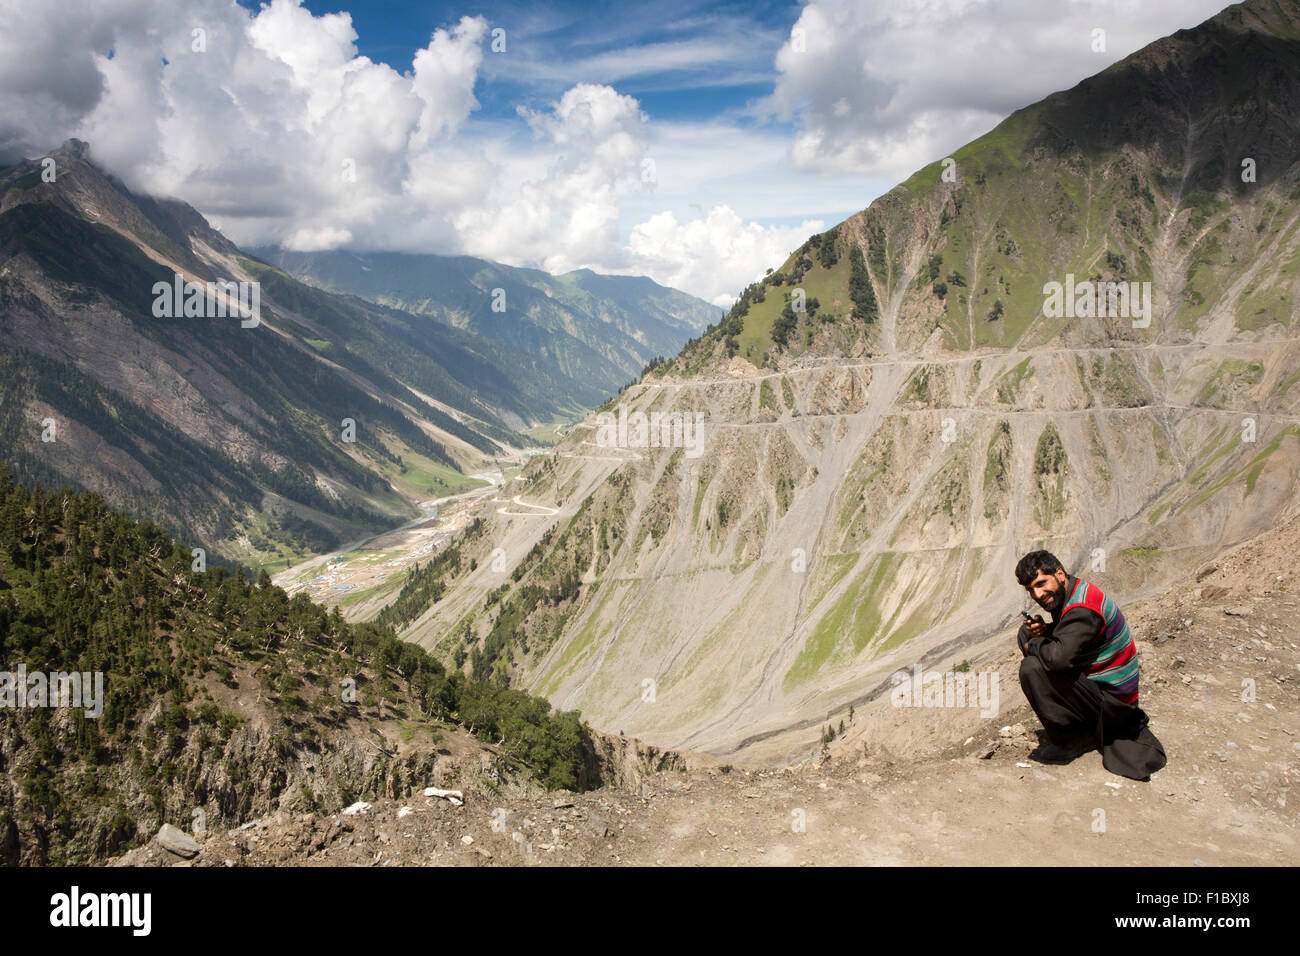 India, Jammu & Kashmir, Srinagar a Leh autopista, hombre local de teléfono móvil junto a carretera Zojila trepar a pasar Foto de stock